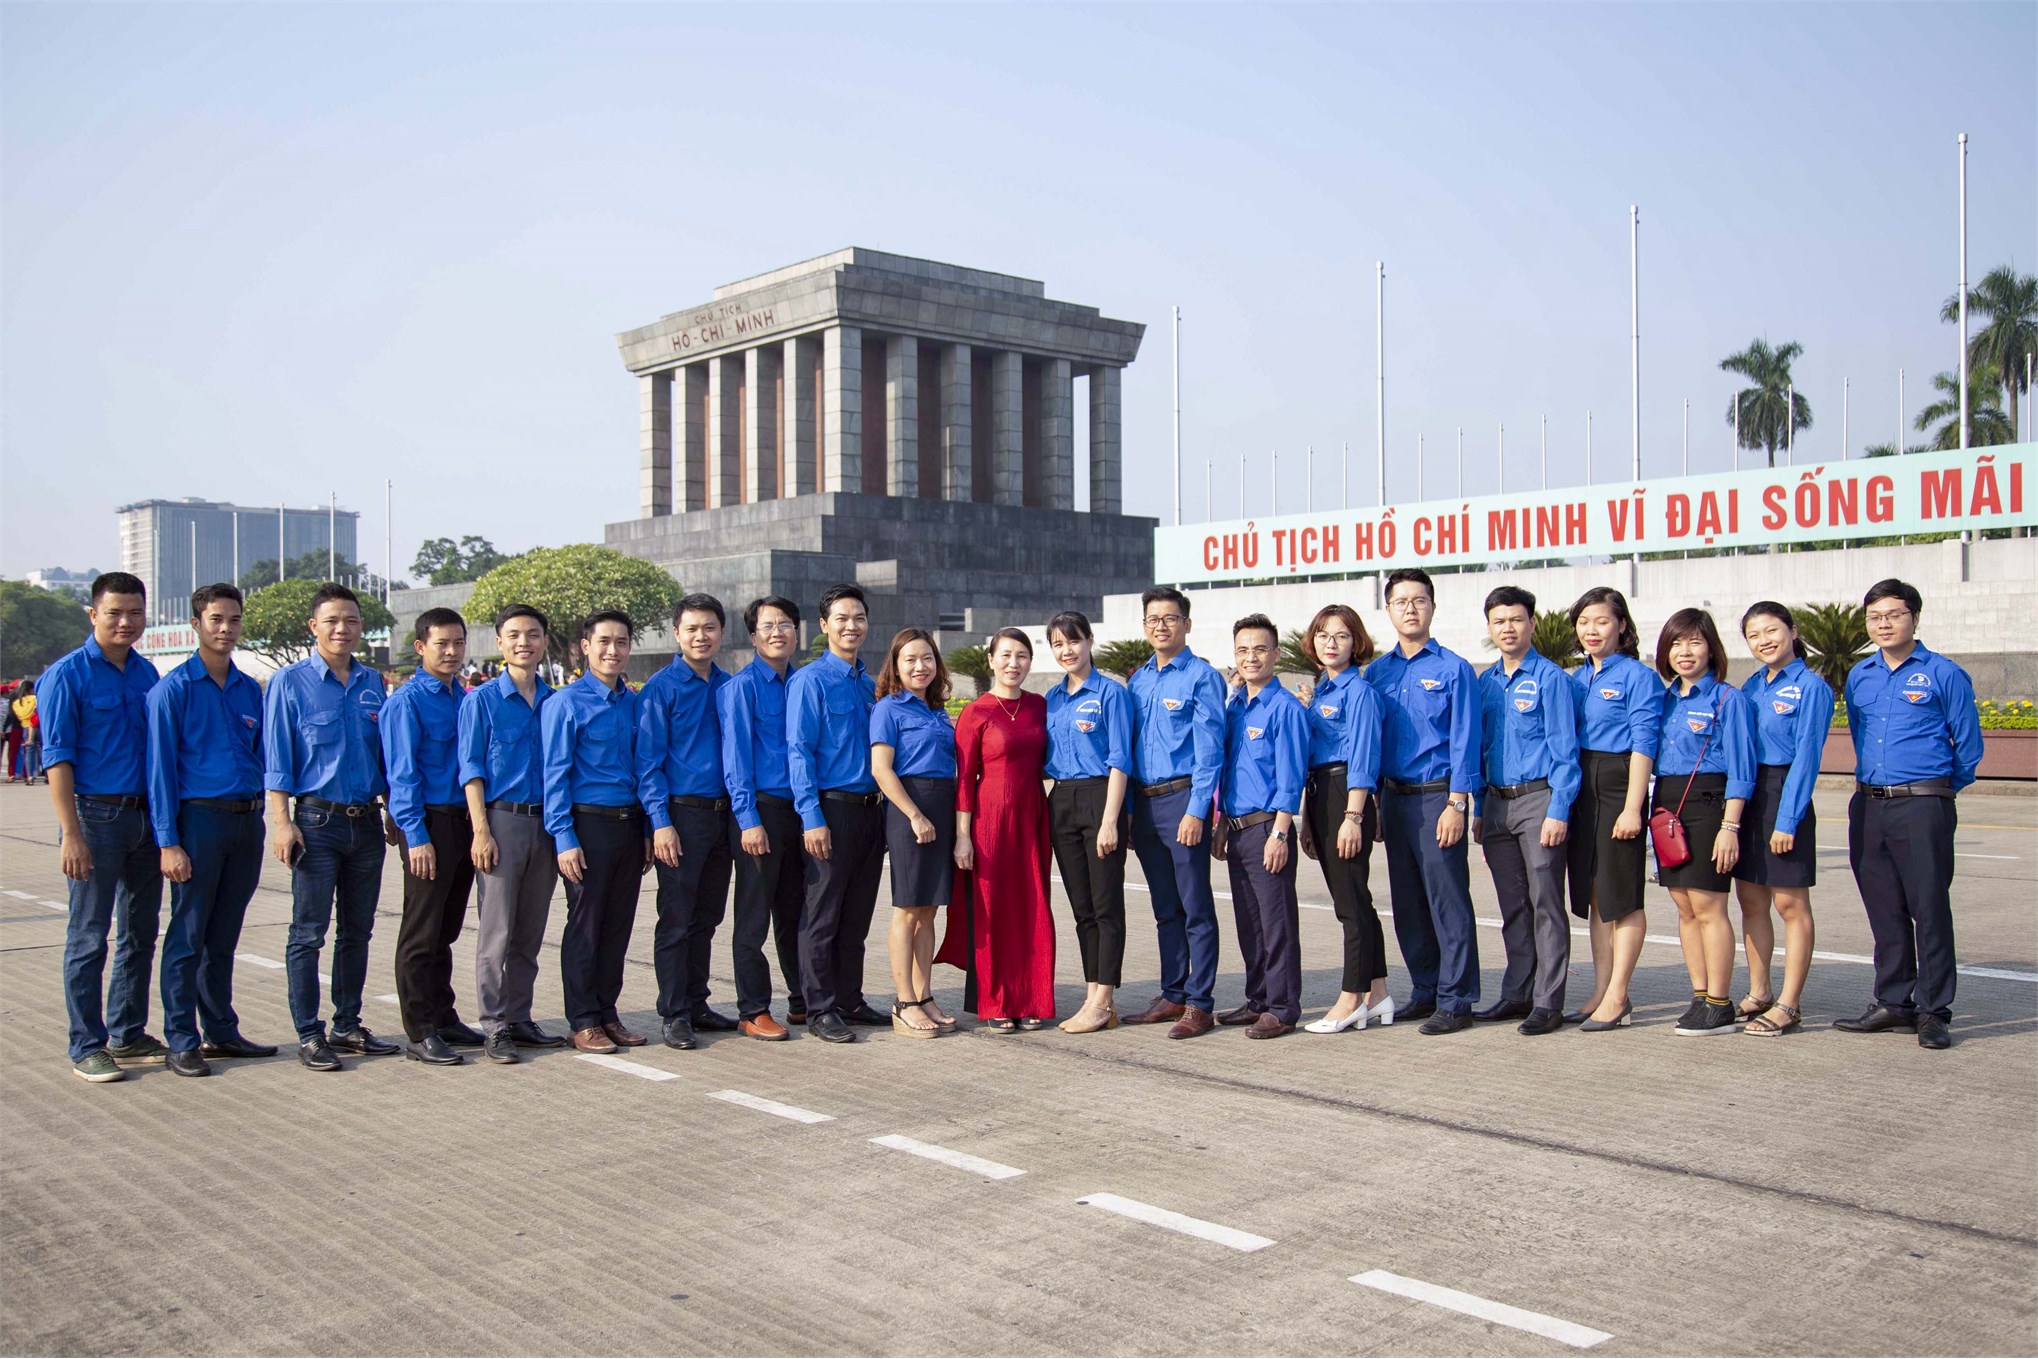 Liên chi đoàn TT Việt Nhật tham gia chương trình Lễ báo công do Đoàn thanh niên - Hội sinh viên tổ chức